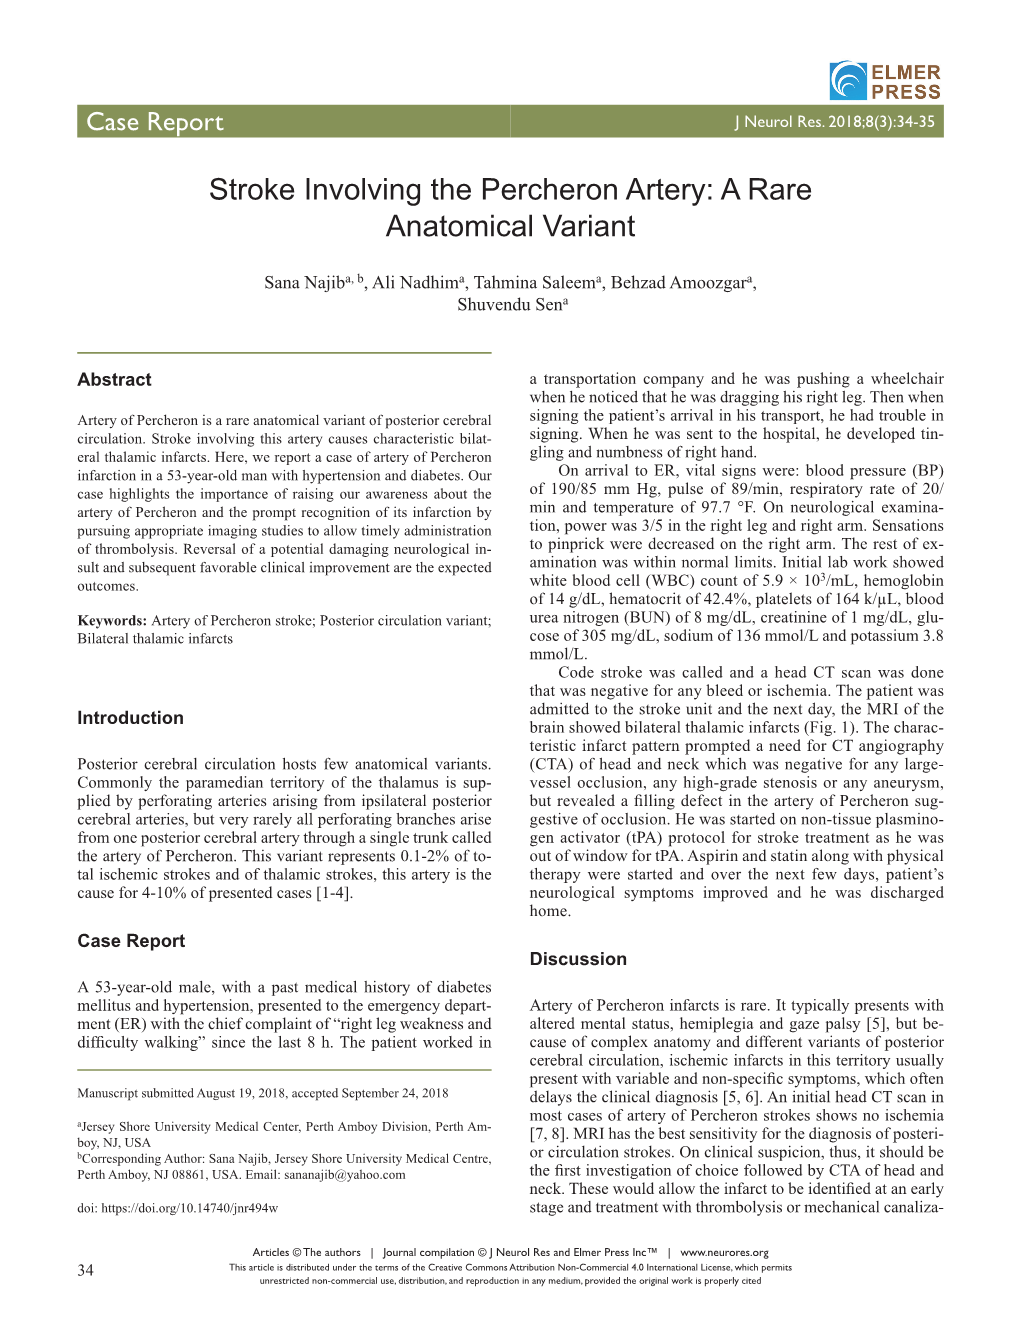 Stroke Involving the Percheron Artery: a Rare Anatomical Variant